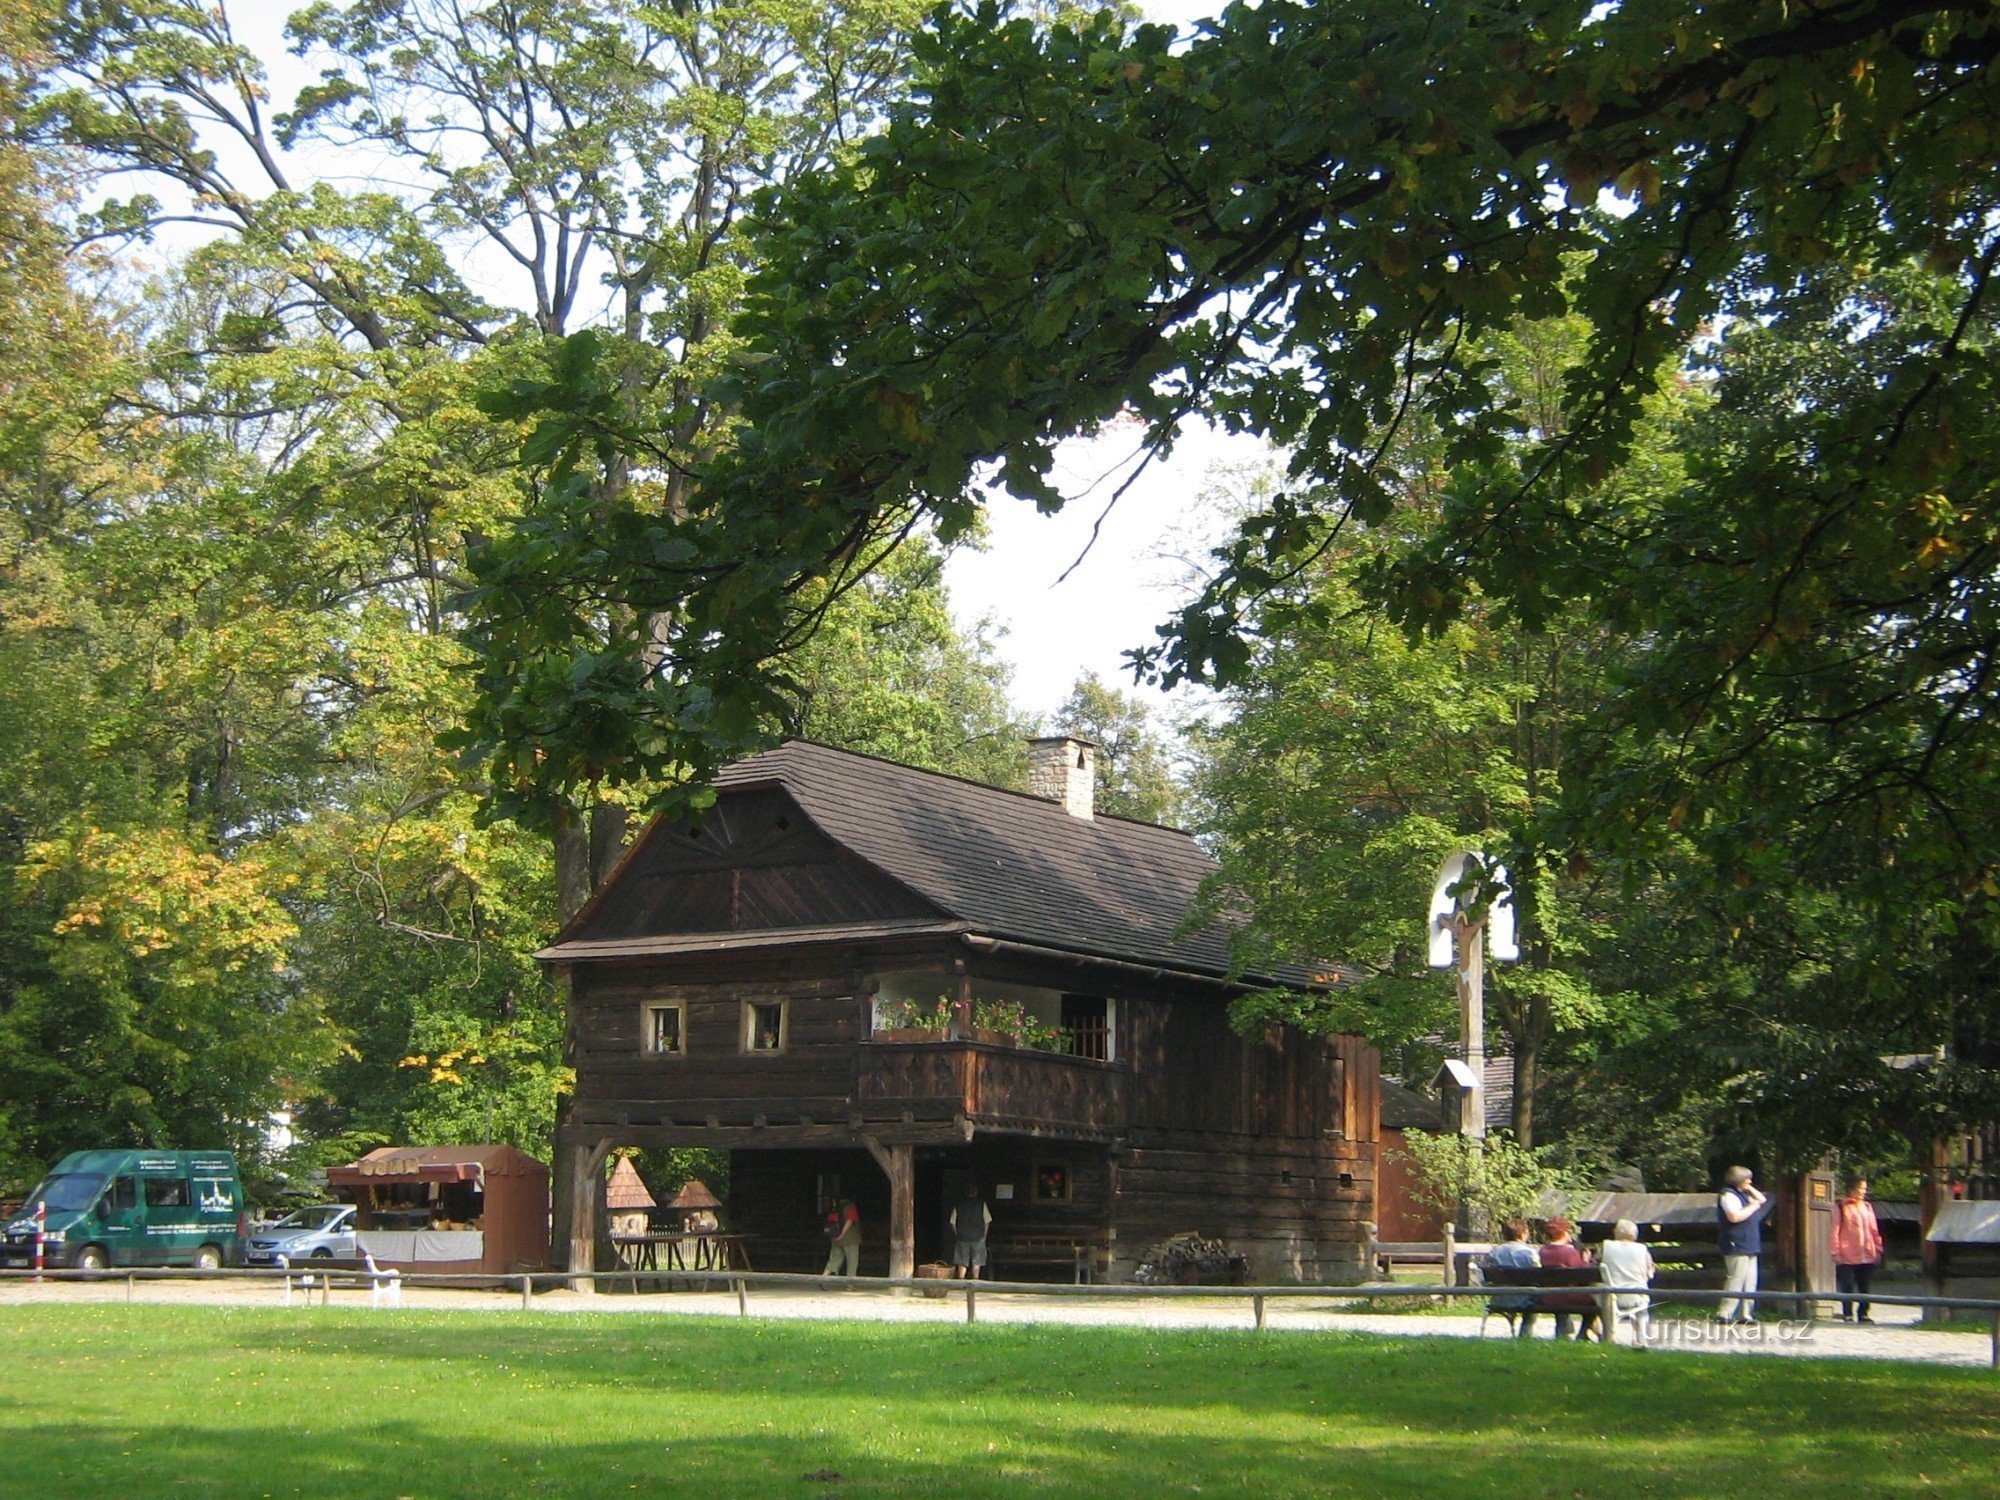 drveni grad muzej na otvorenom